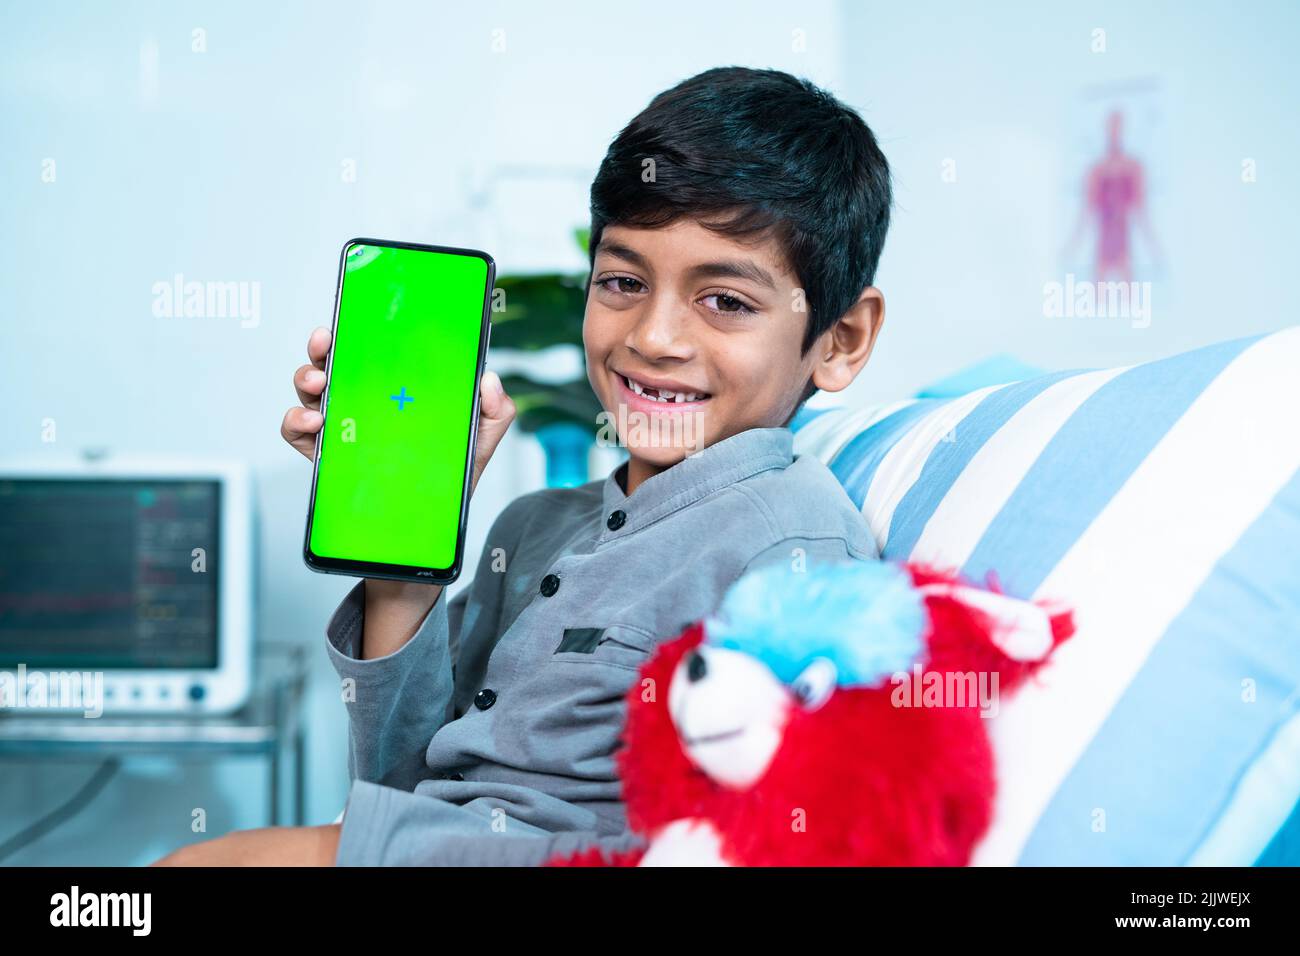 Feliz sonriente se recuperó niño enfermo mostrando teléfono móvil con pantalla verde mientras estaba acostado en la cama en el hospital mirando la cámara - concepto de consultor en línea Foto de stock